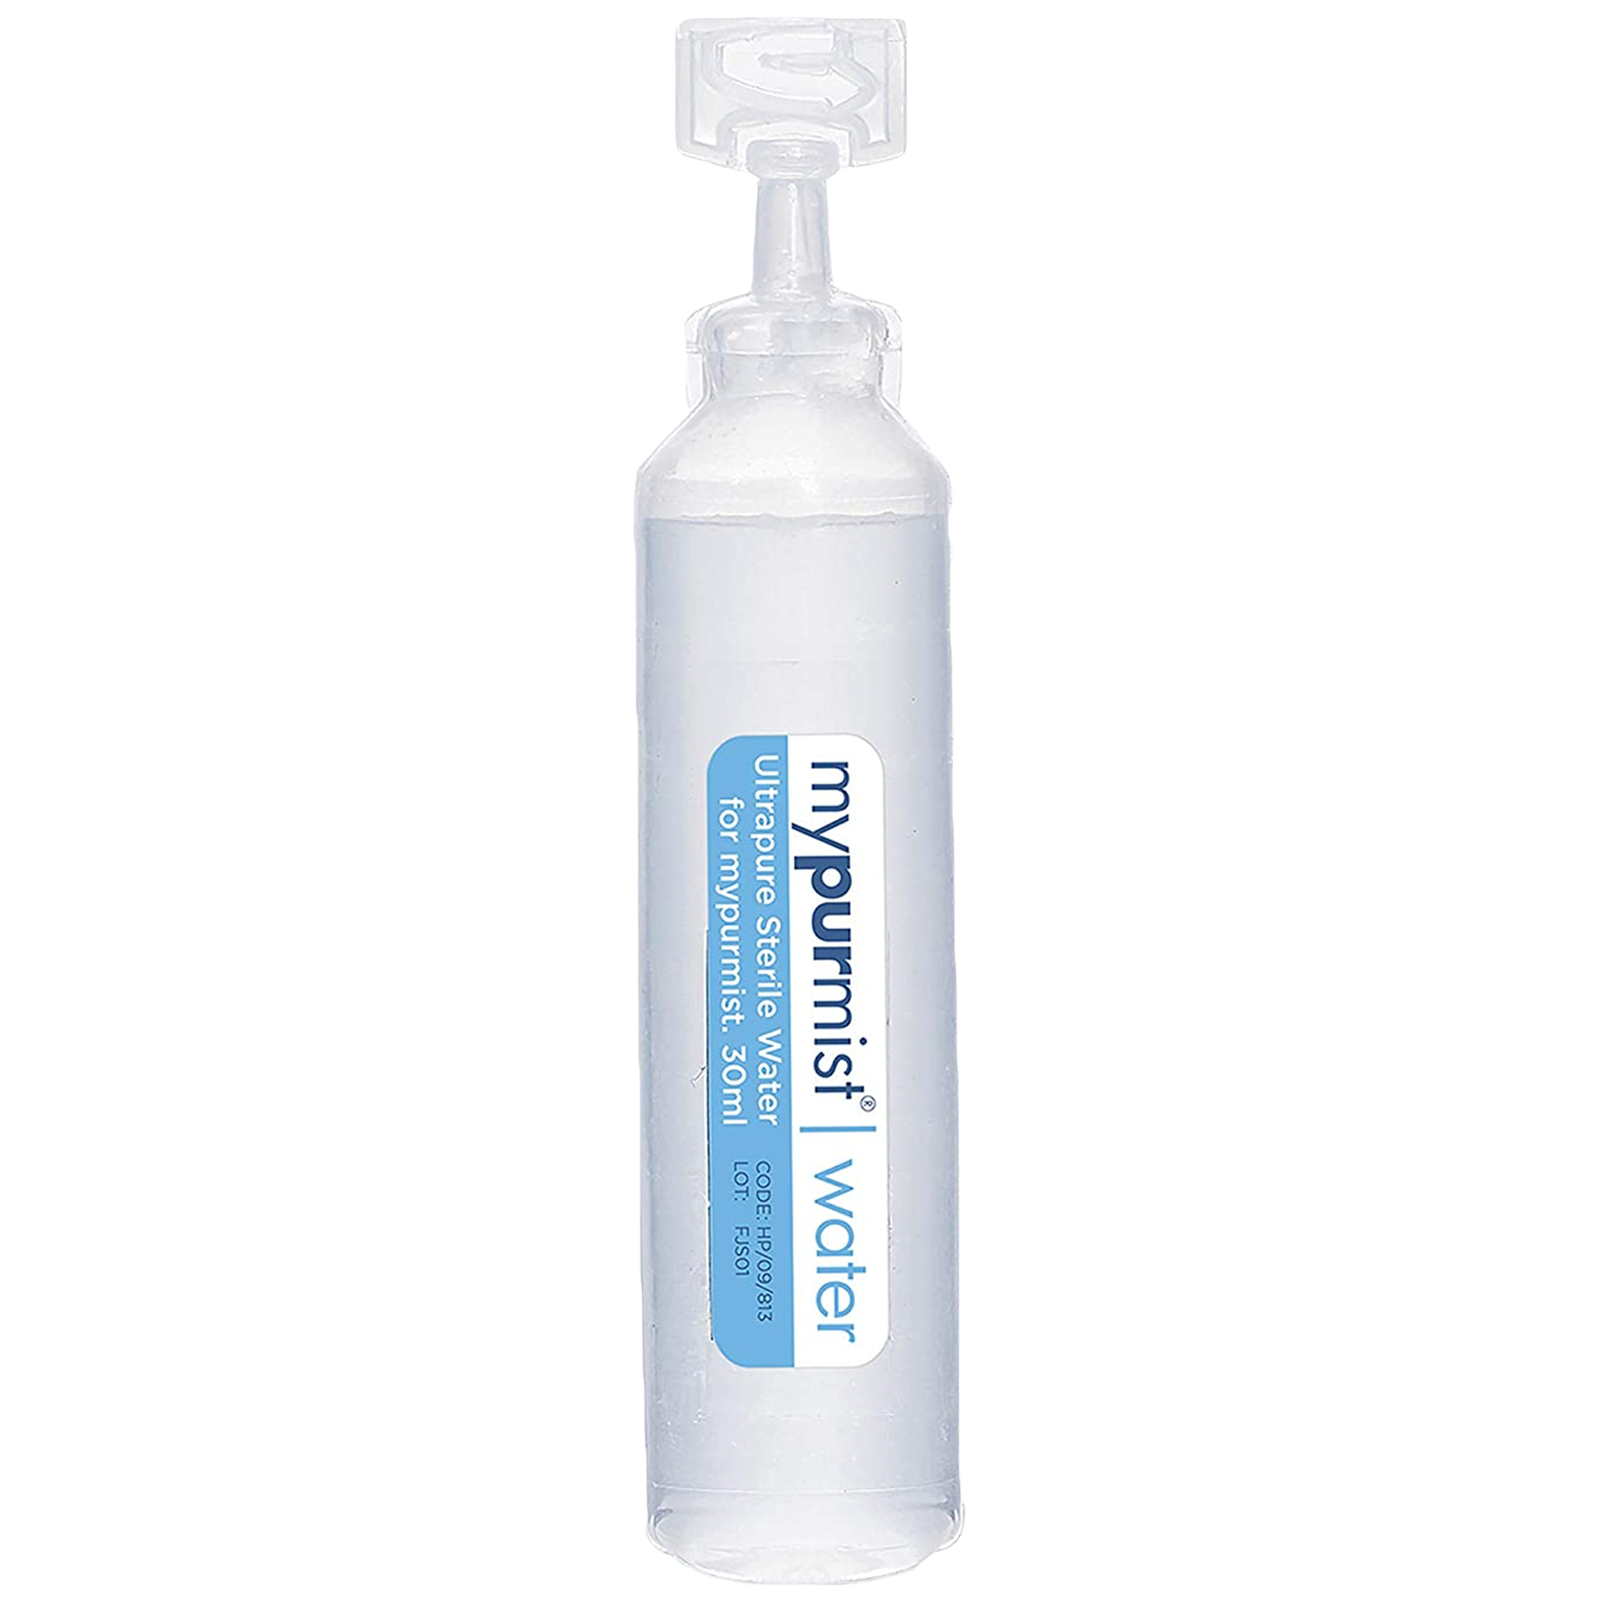 Mypurmist Ultrapure Sterile Water Facial Steamer (20 Refills, NI1917, White)_1